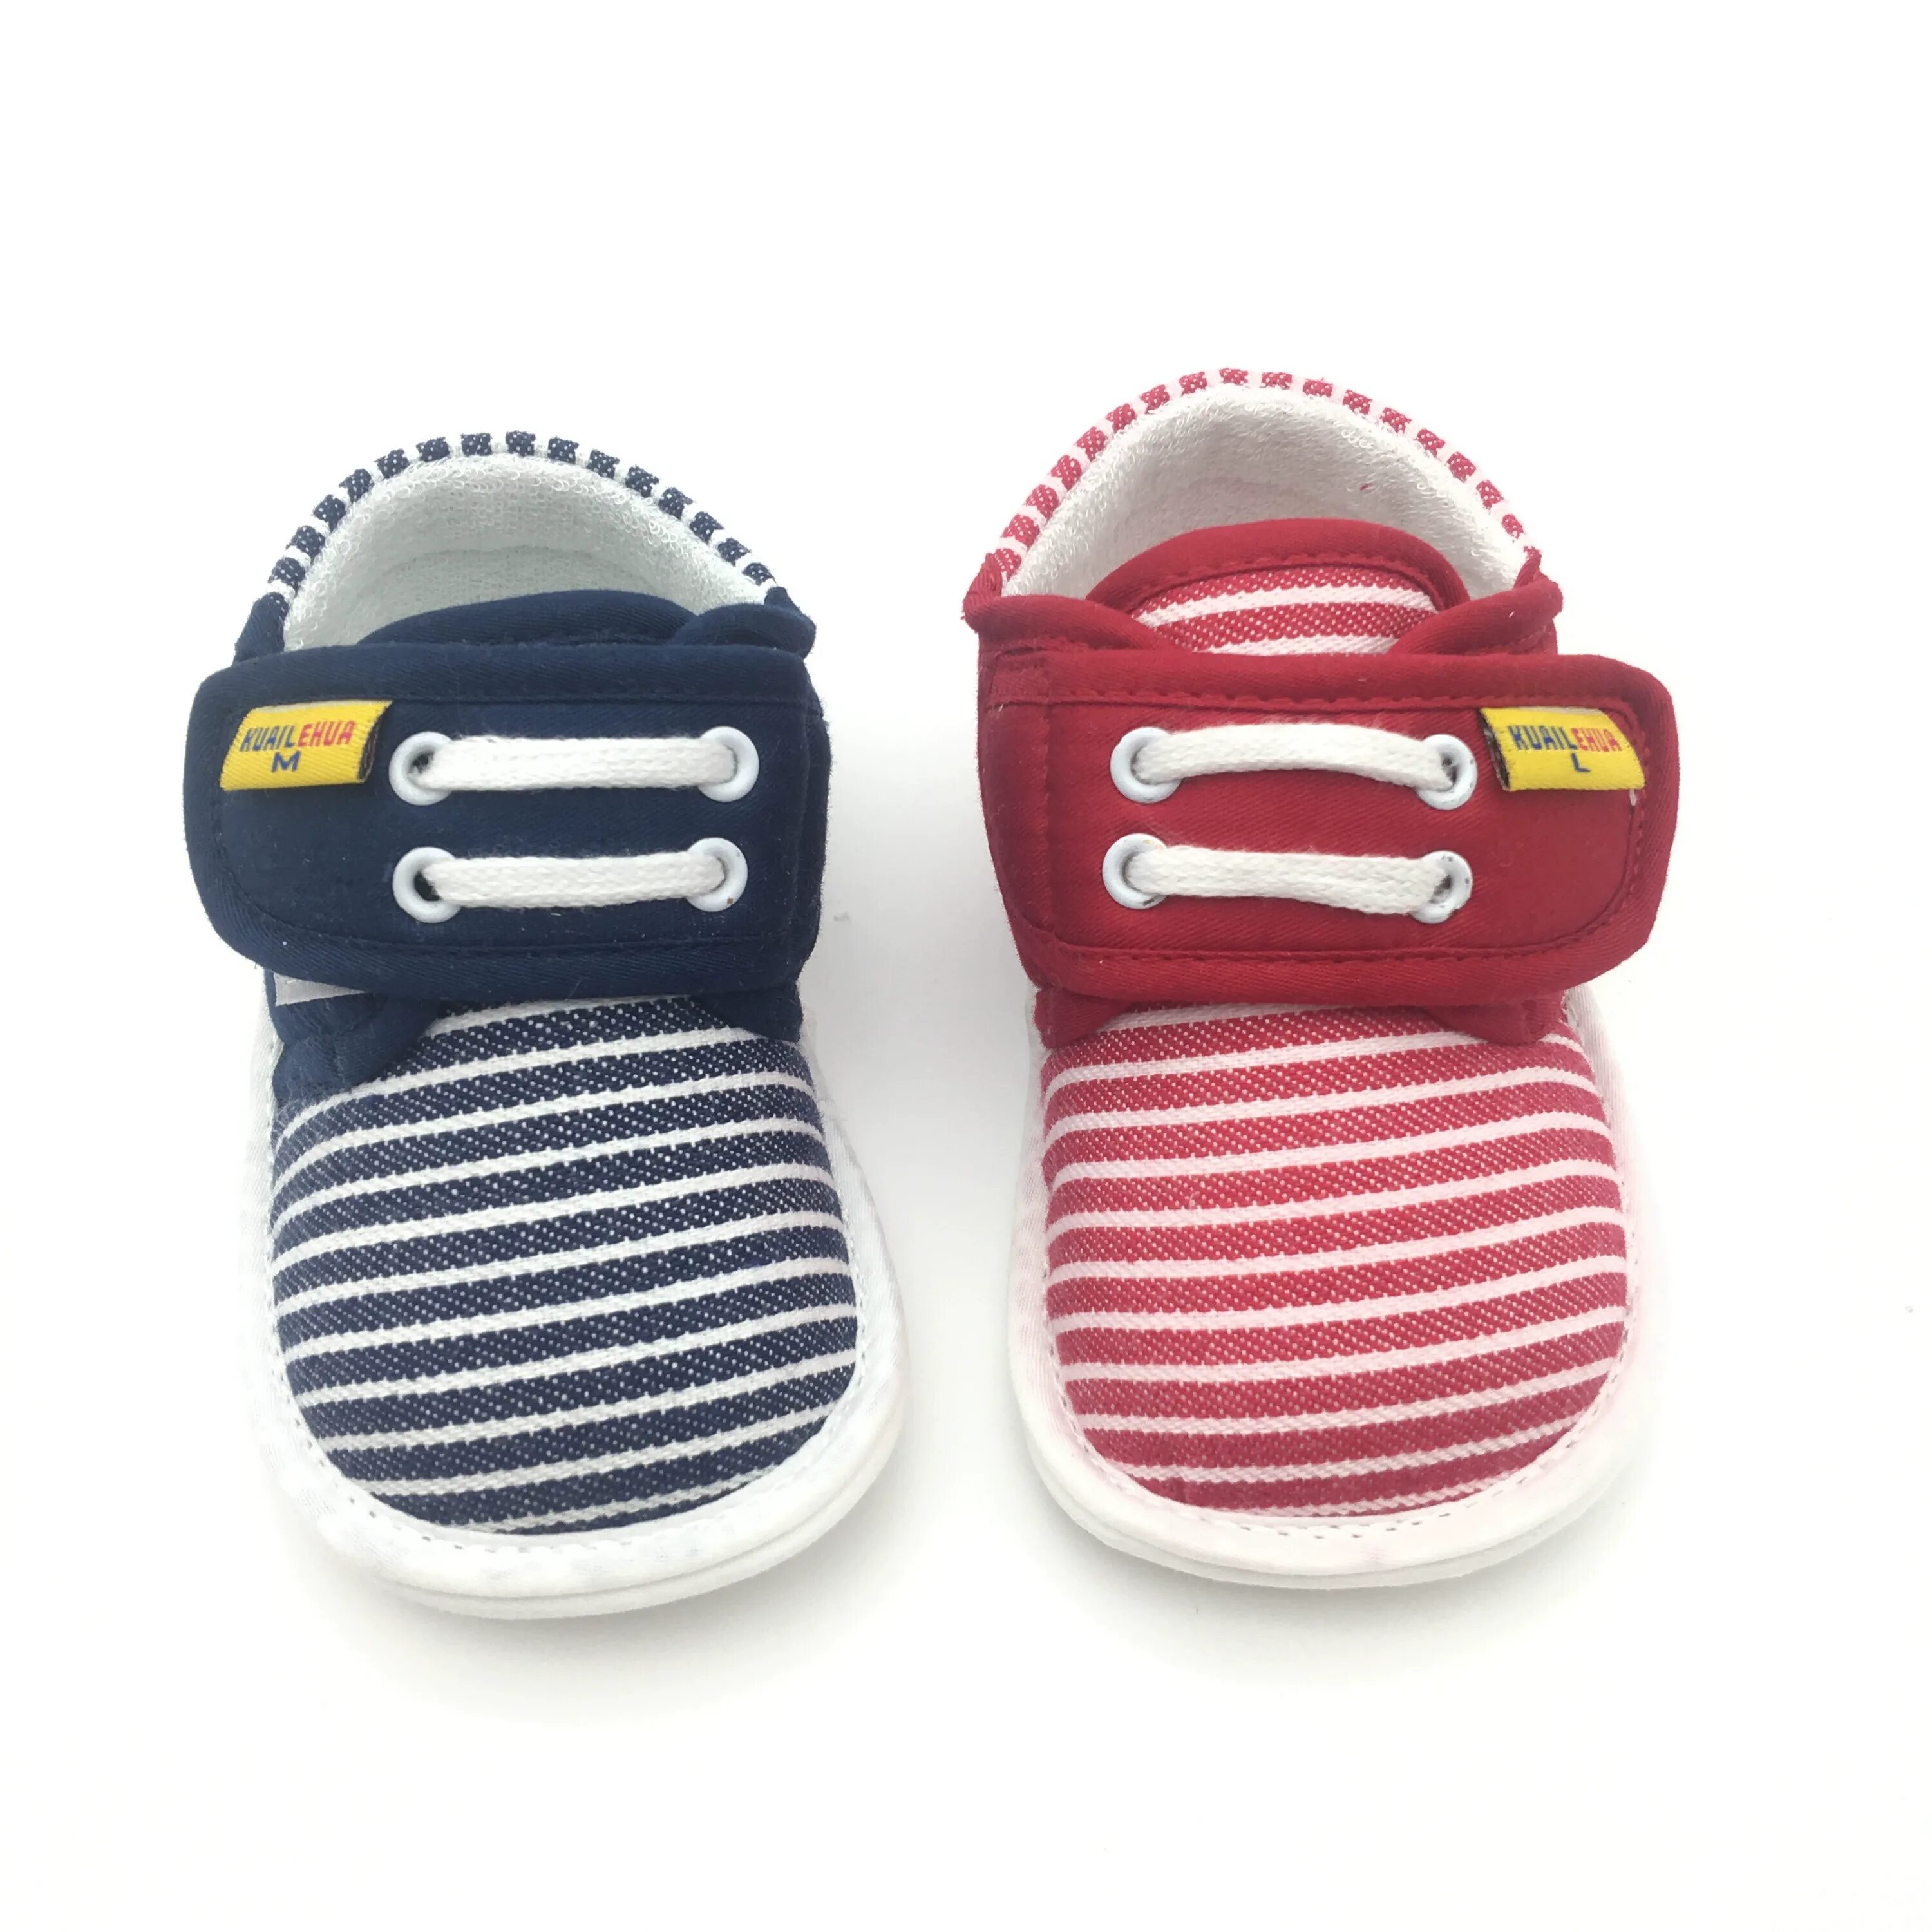 Cesaro Rosso детская обувь. Слипы обувь детские. Модная детская обувь для малышей. Детская обувь на весну для новорожденных тапки. Лучшая обувь для малышей